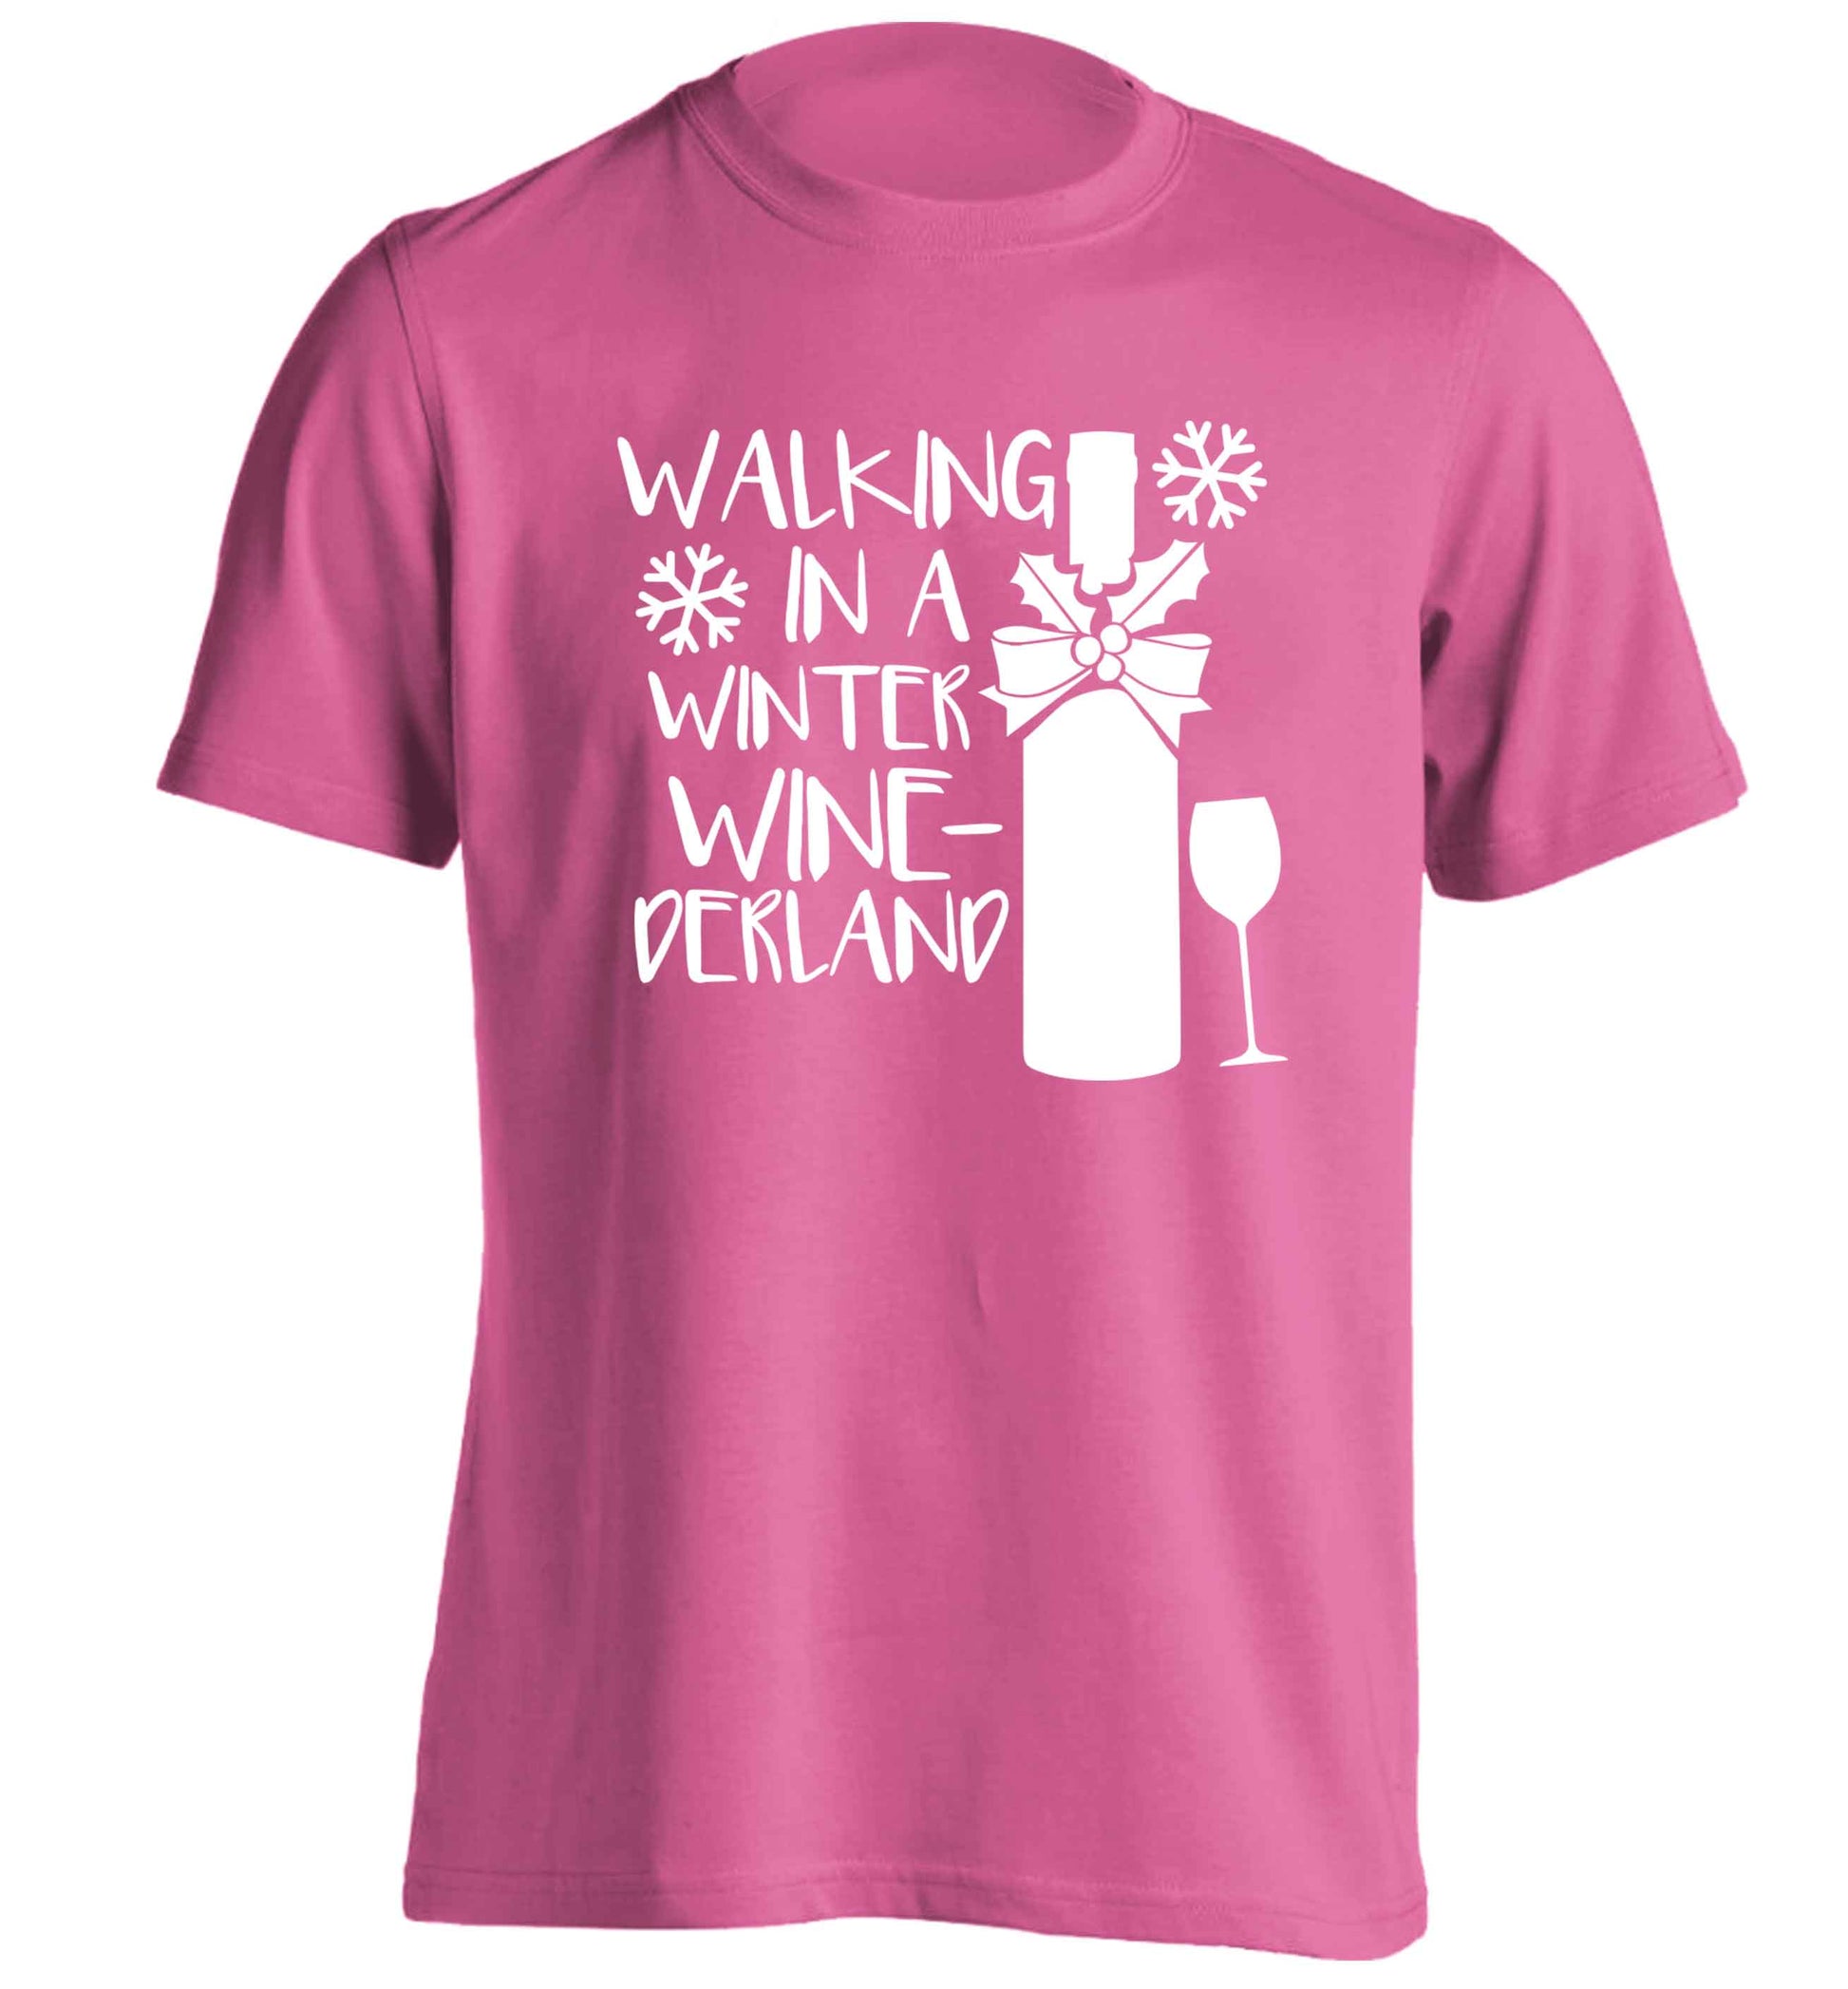 Walking in a wine-derwonderland adults unisex pink Tshirt 2XL